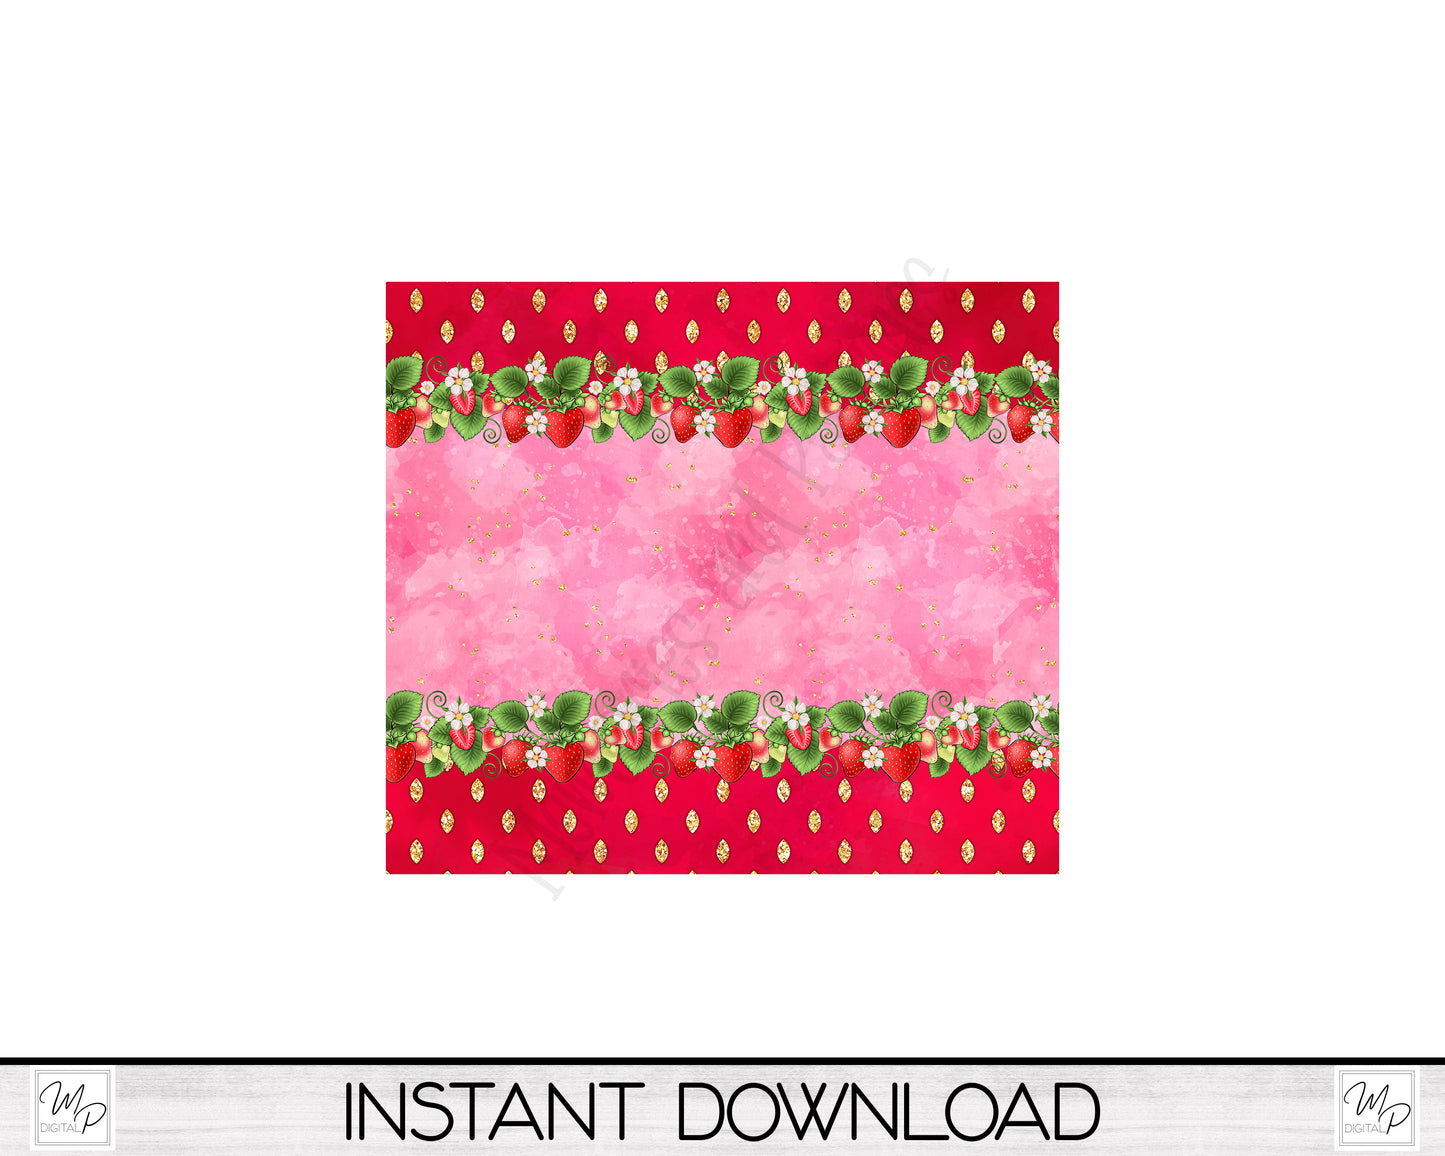 Strawberry 20oz Skinny Tumbler PNG Sublimation Design, Tumbler Digital Download